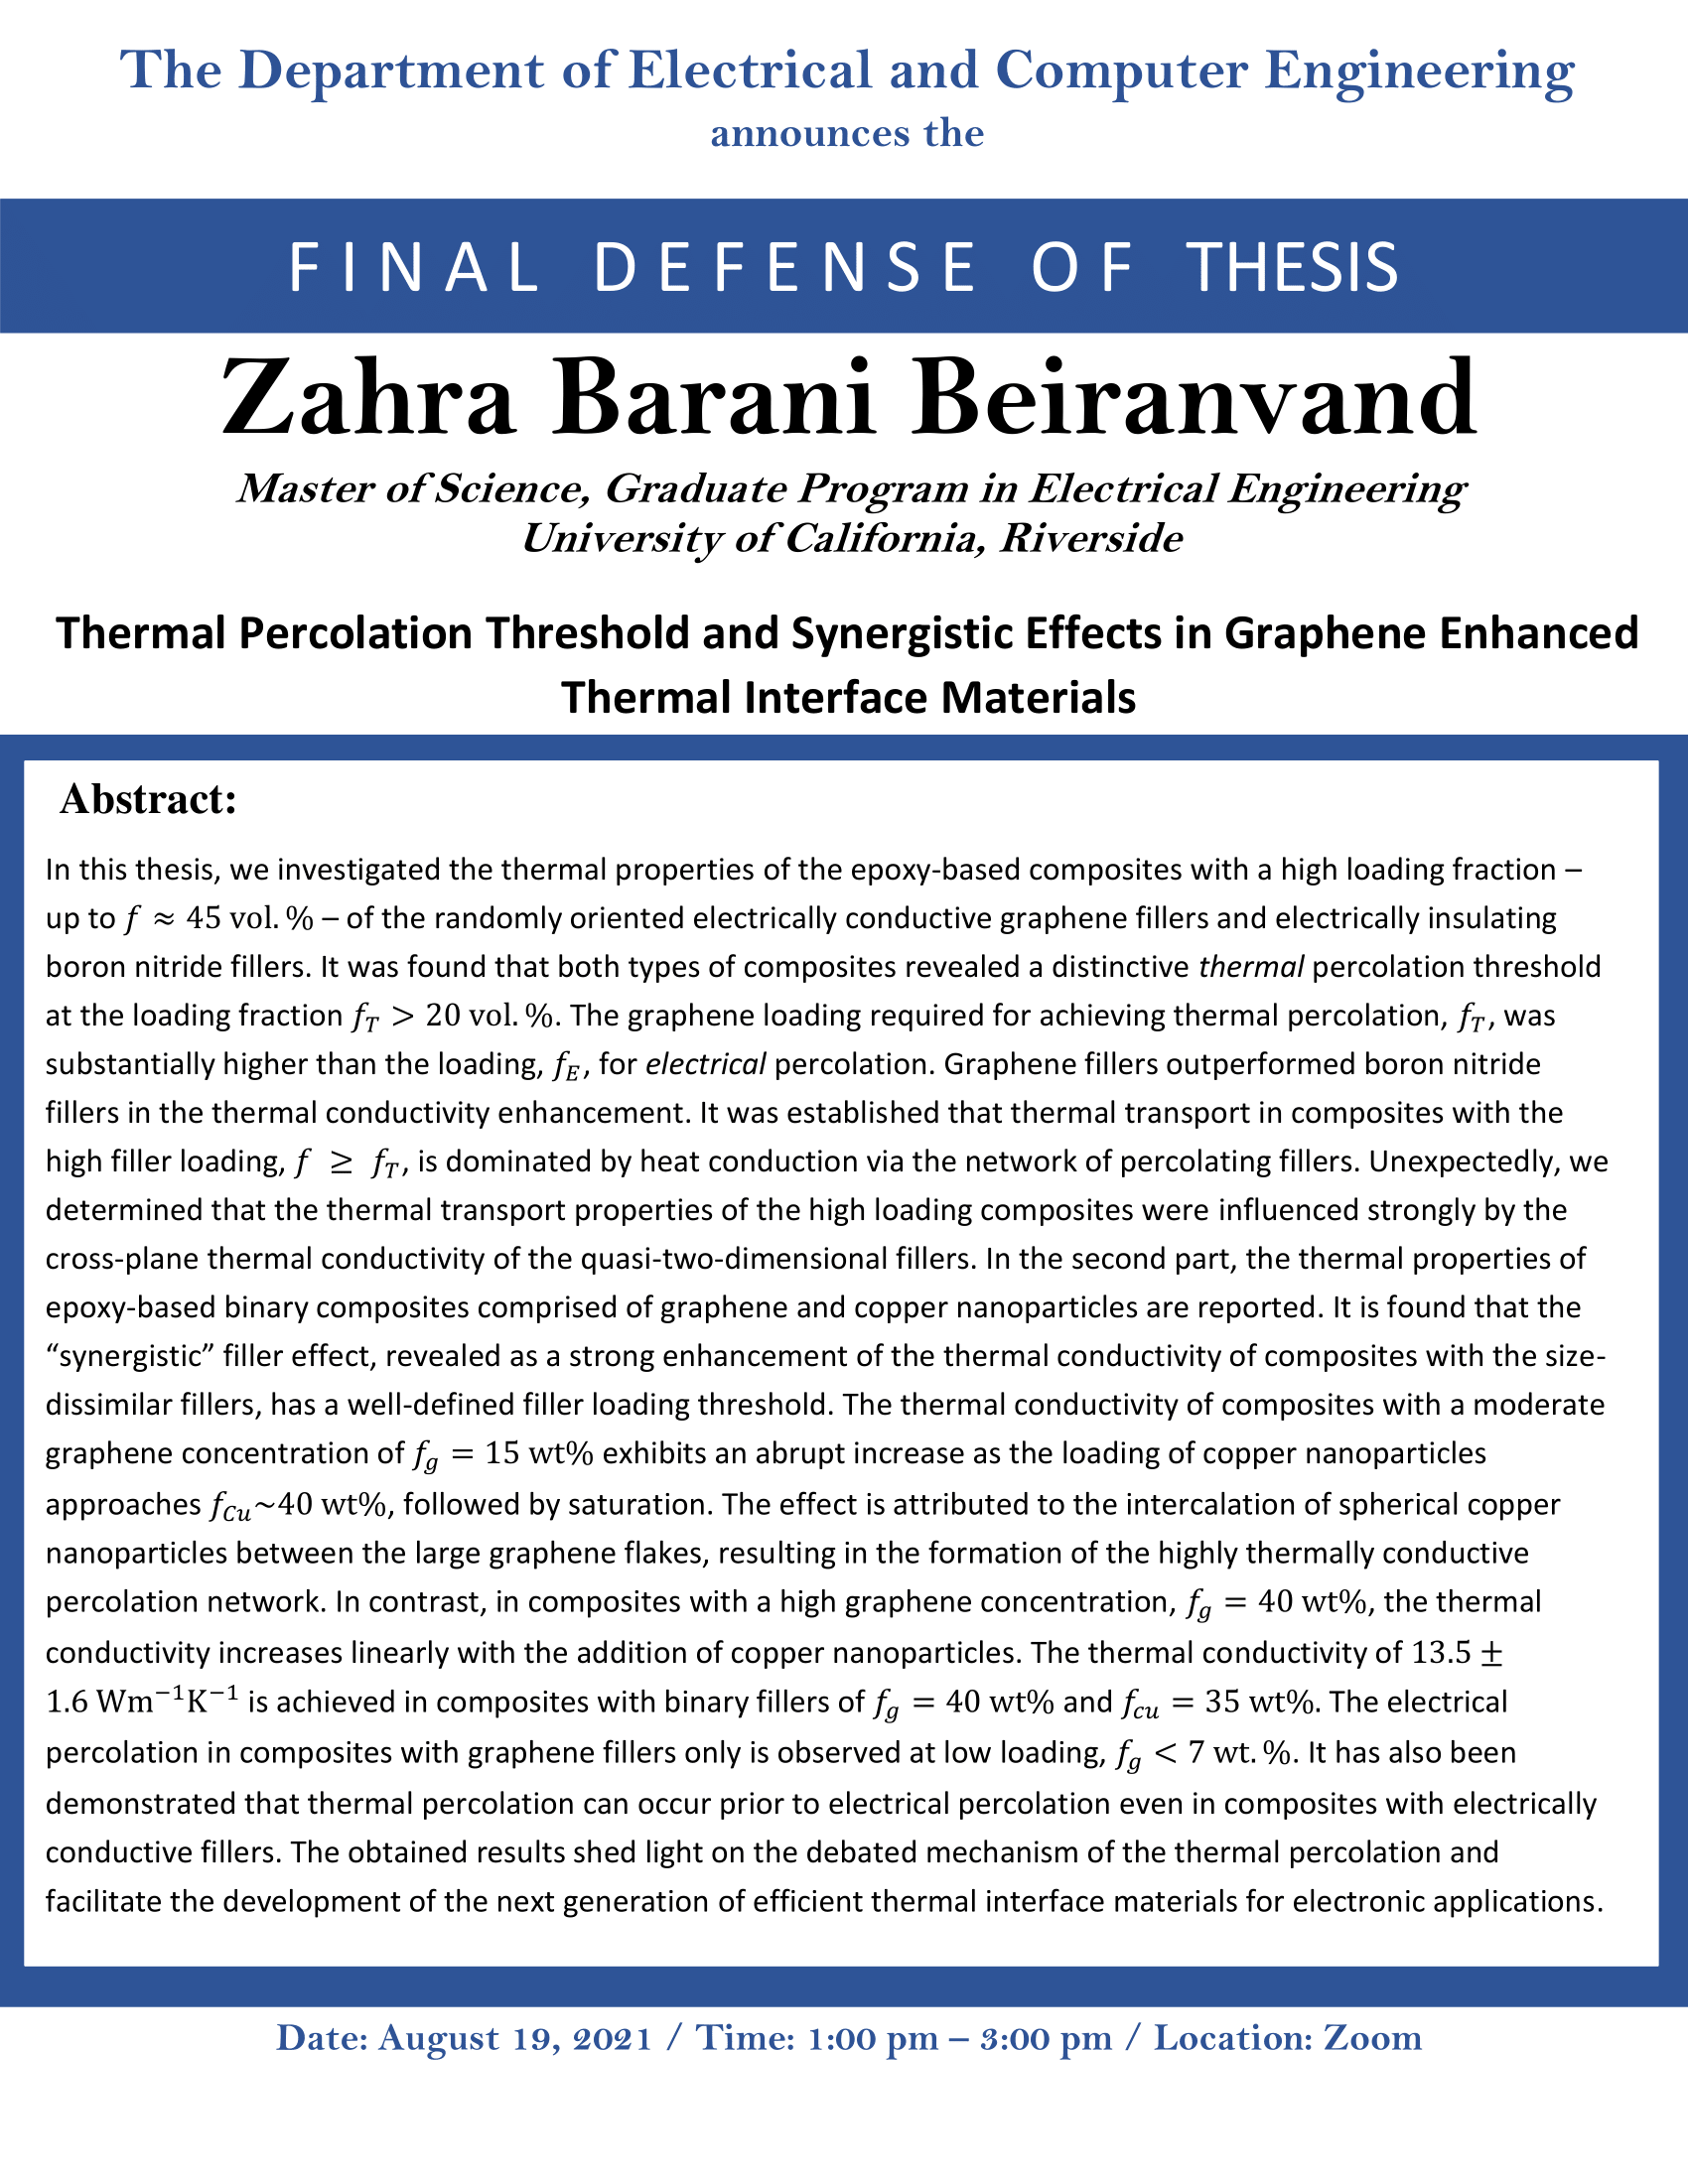 Zahra Barani updated